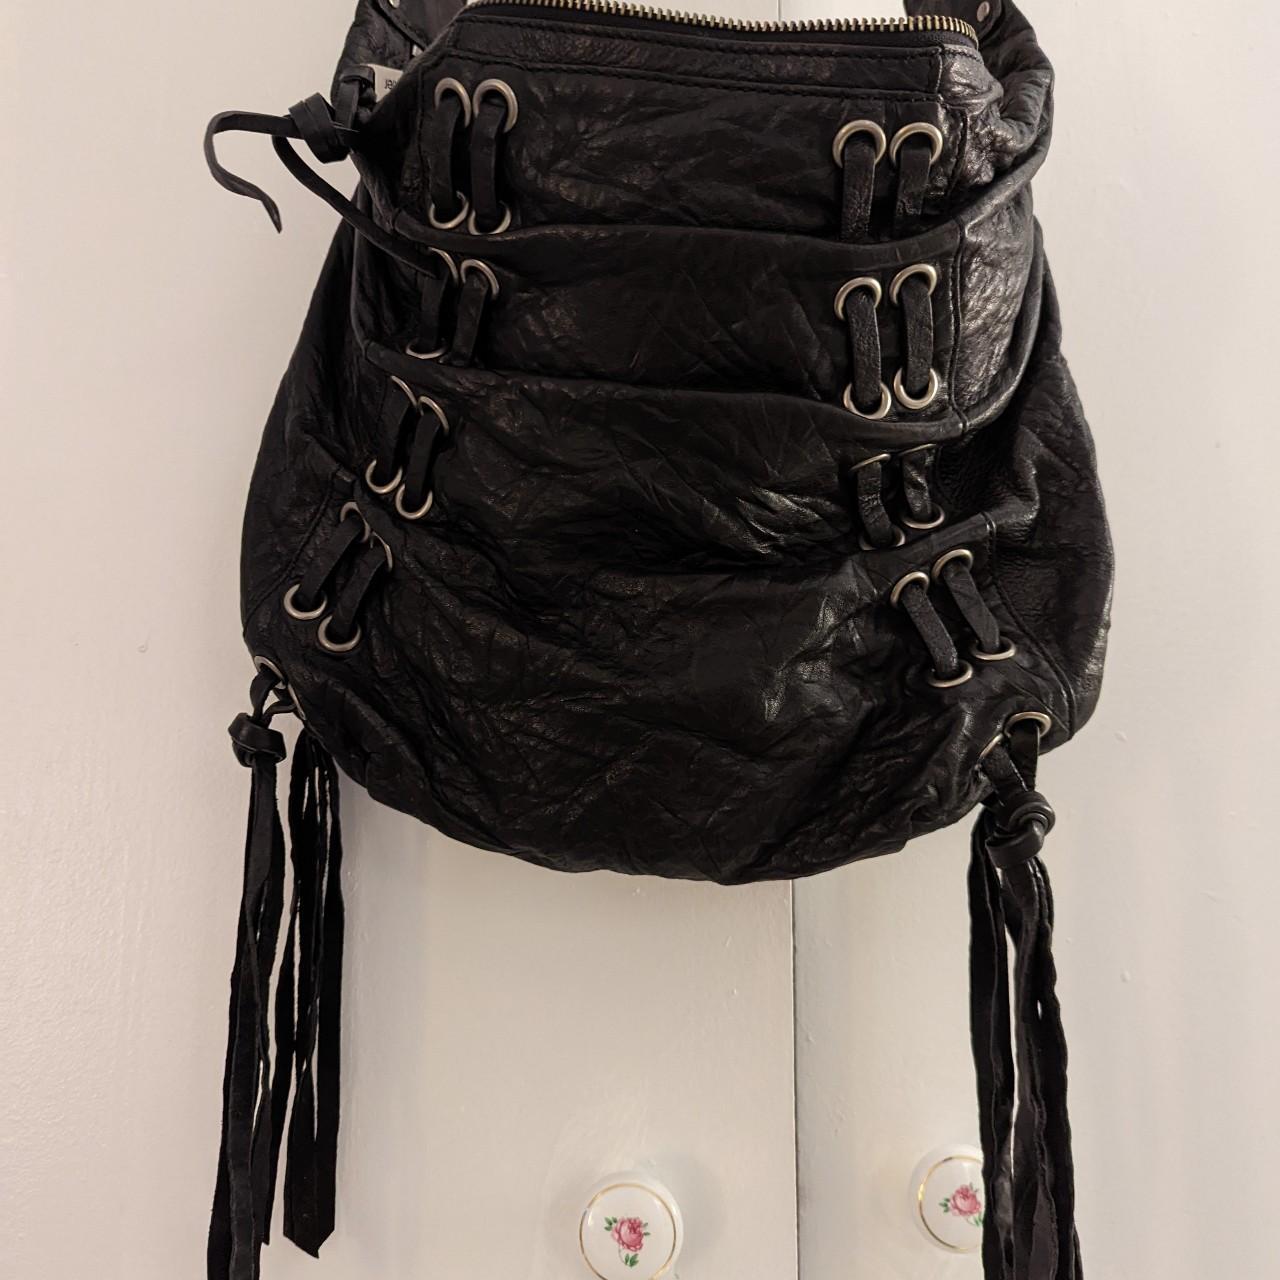 Botkier Women's Black Bag (2)